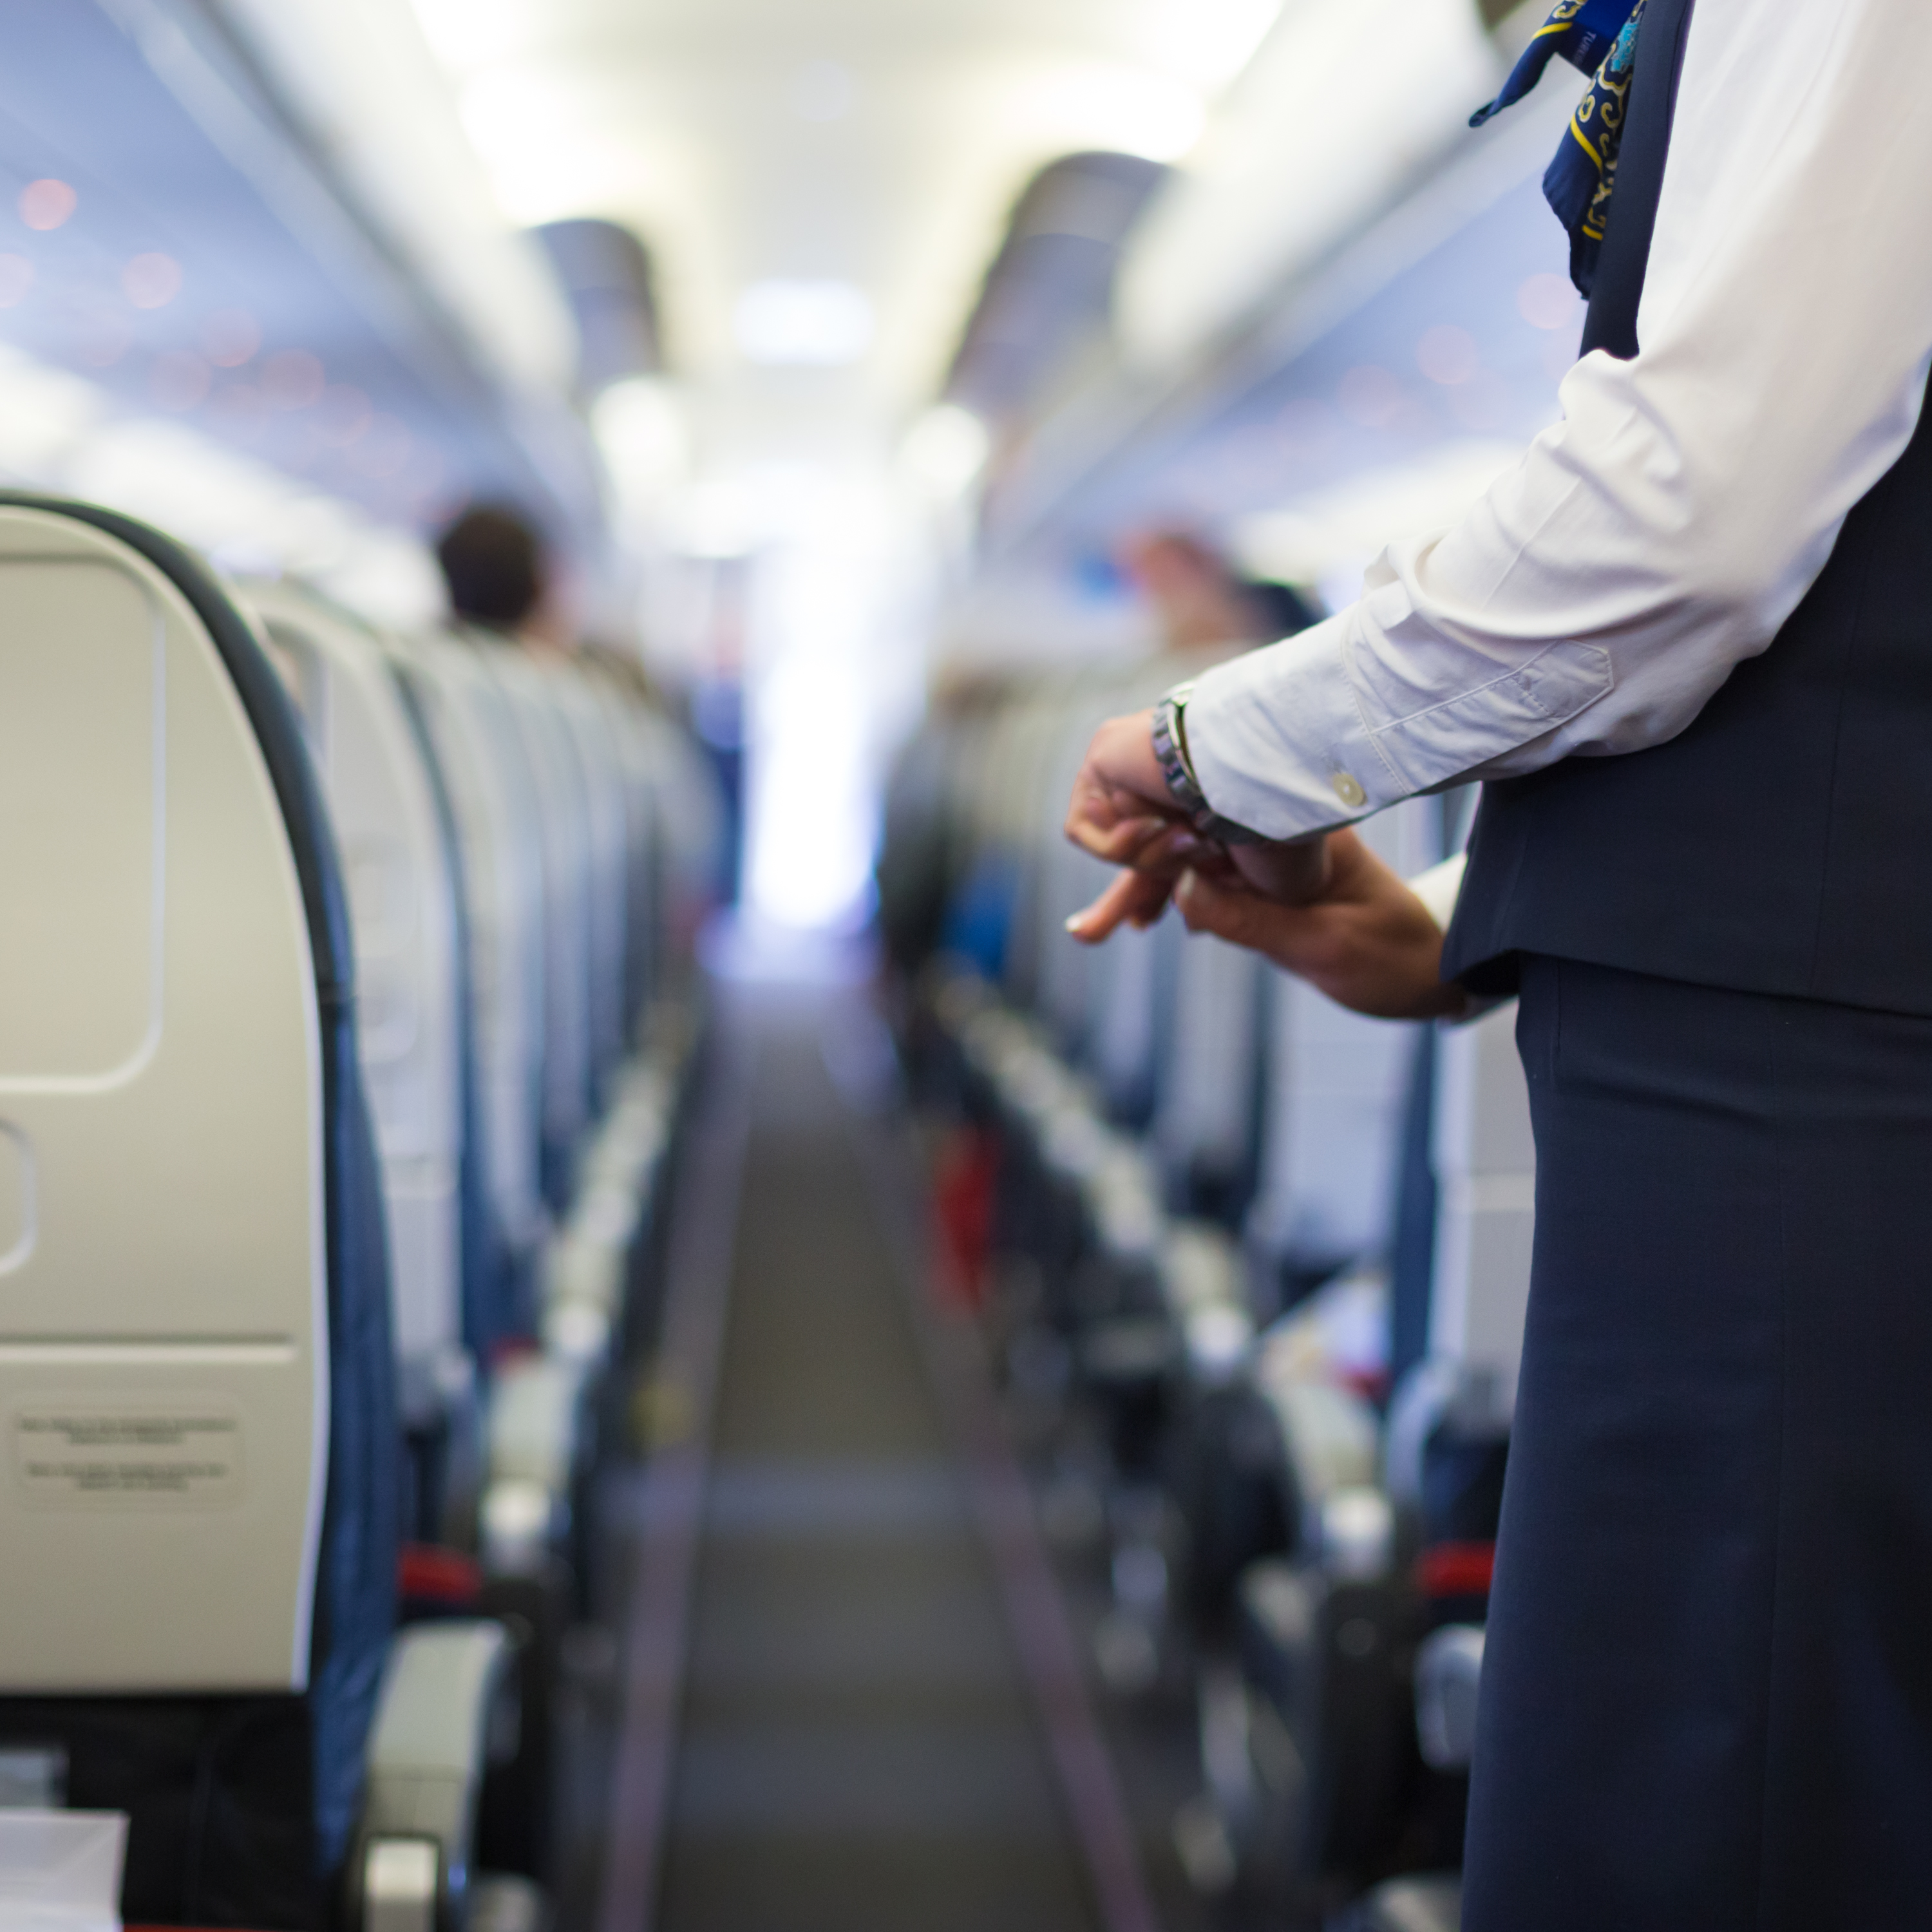 Racistische snapchat komt stewardess duur te staan